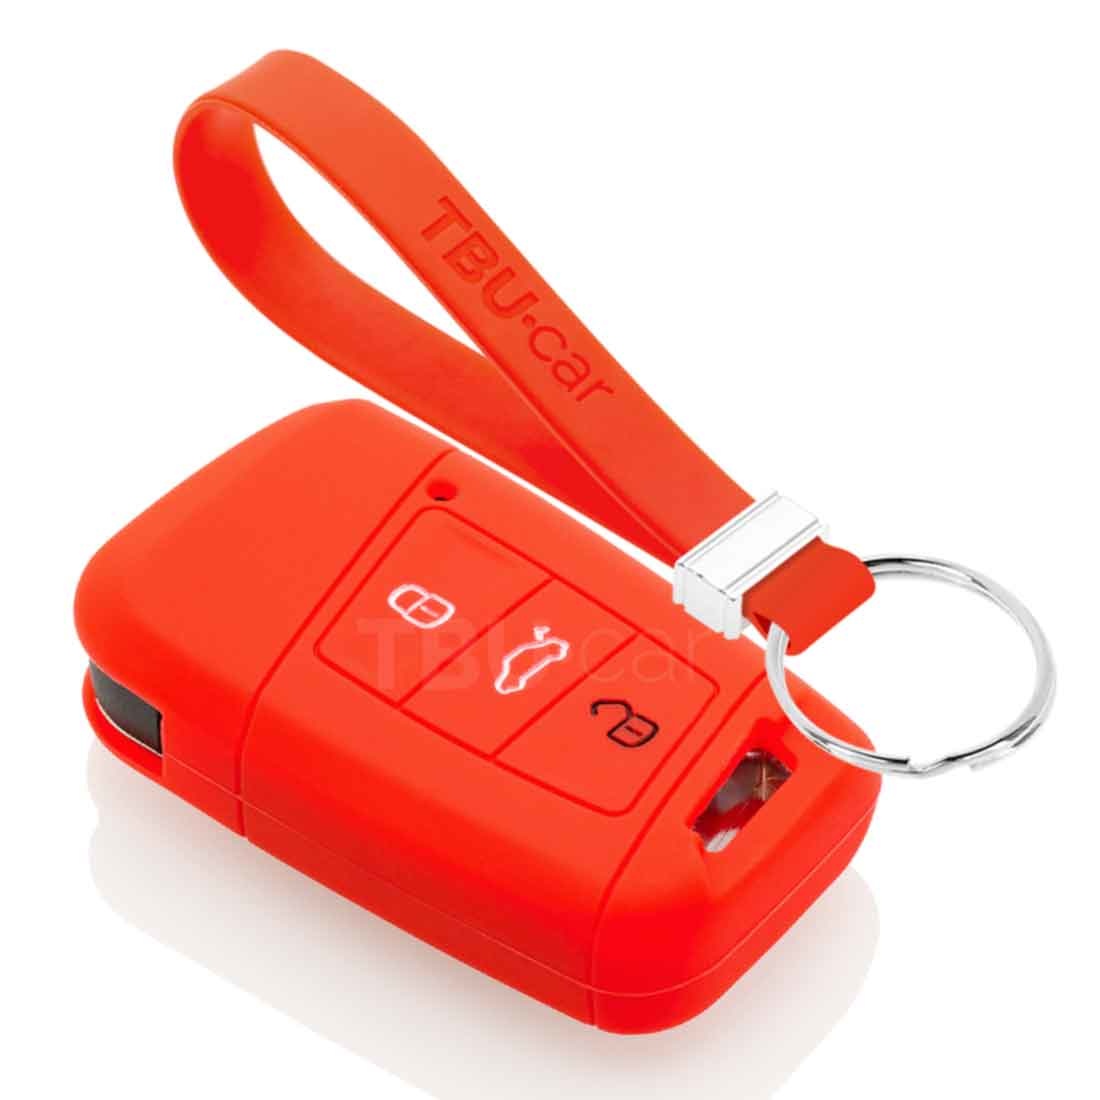 TBU car TBU car Autoschlüssel Hülle kompatibel mit VW 3 Tasten (Keyless Entry) - Schutzhülle aus Silikon - Auto Schlüsselhülle Cover in Rot